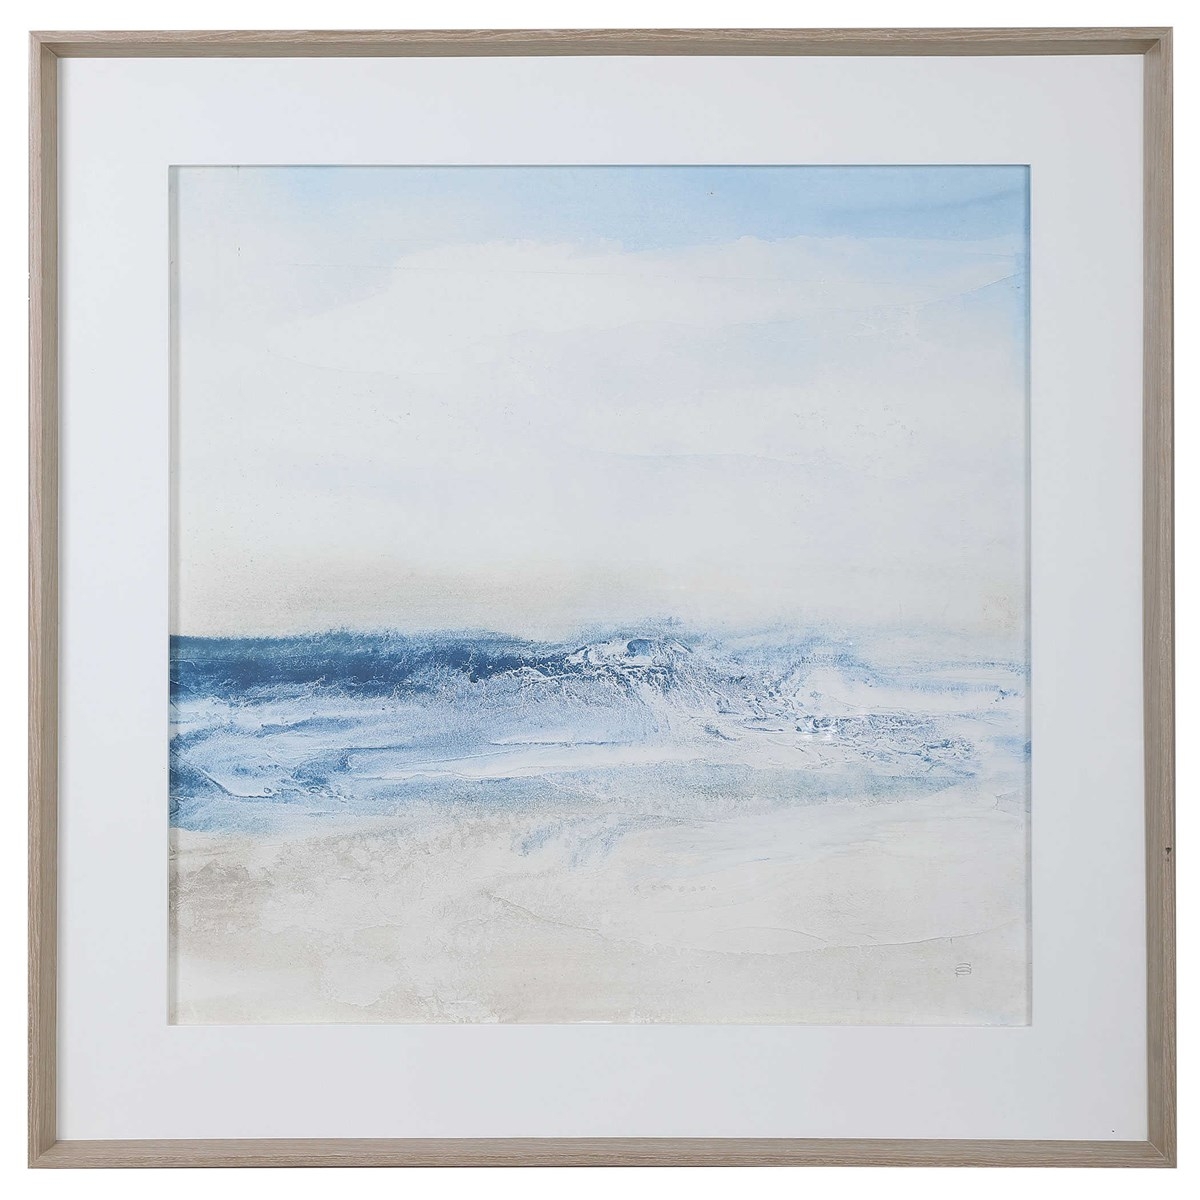 Surf & Sand Framed Print, 52" x 52" - Image 0